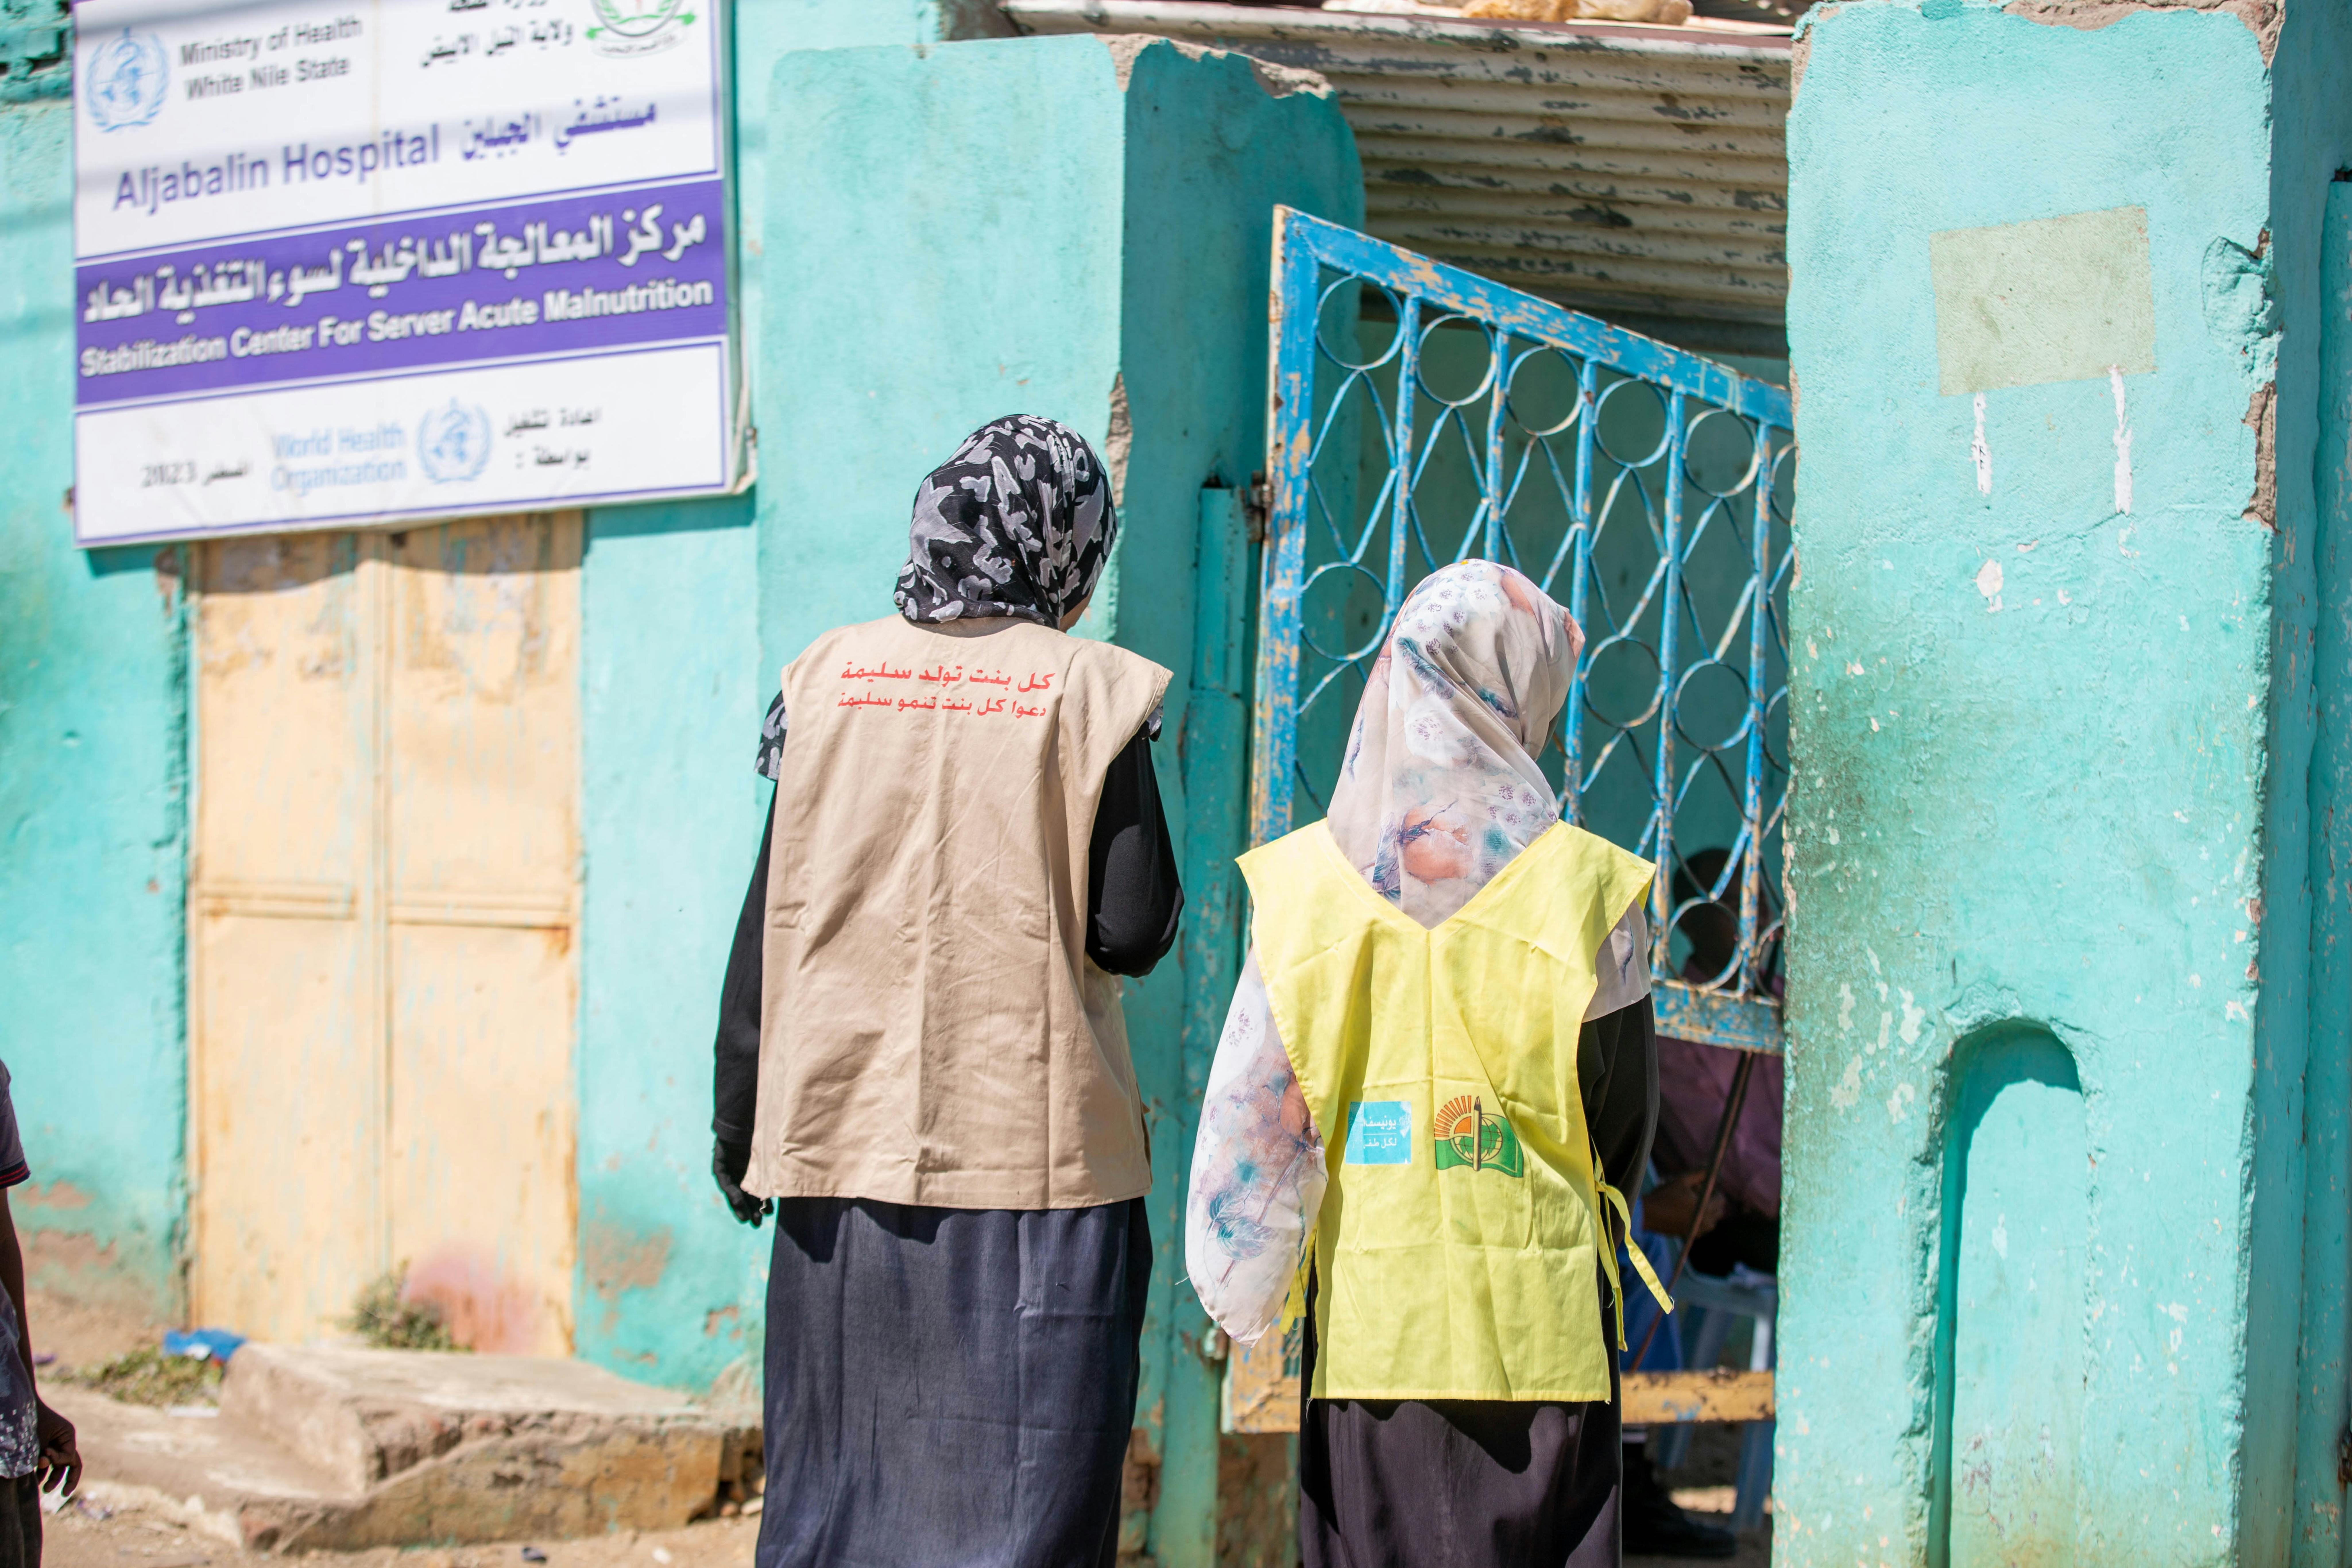 La tredicenne Fiyha e la sua coordinatrice Salwa, arrivano all'ospedale di Aljabalin per tenere una sessione sui pericoli del matrimonio precoce e della mutilazione genitale femminile.